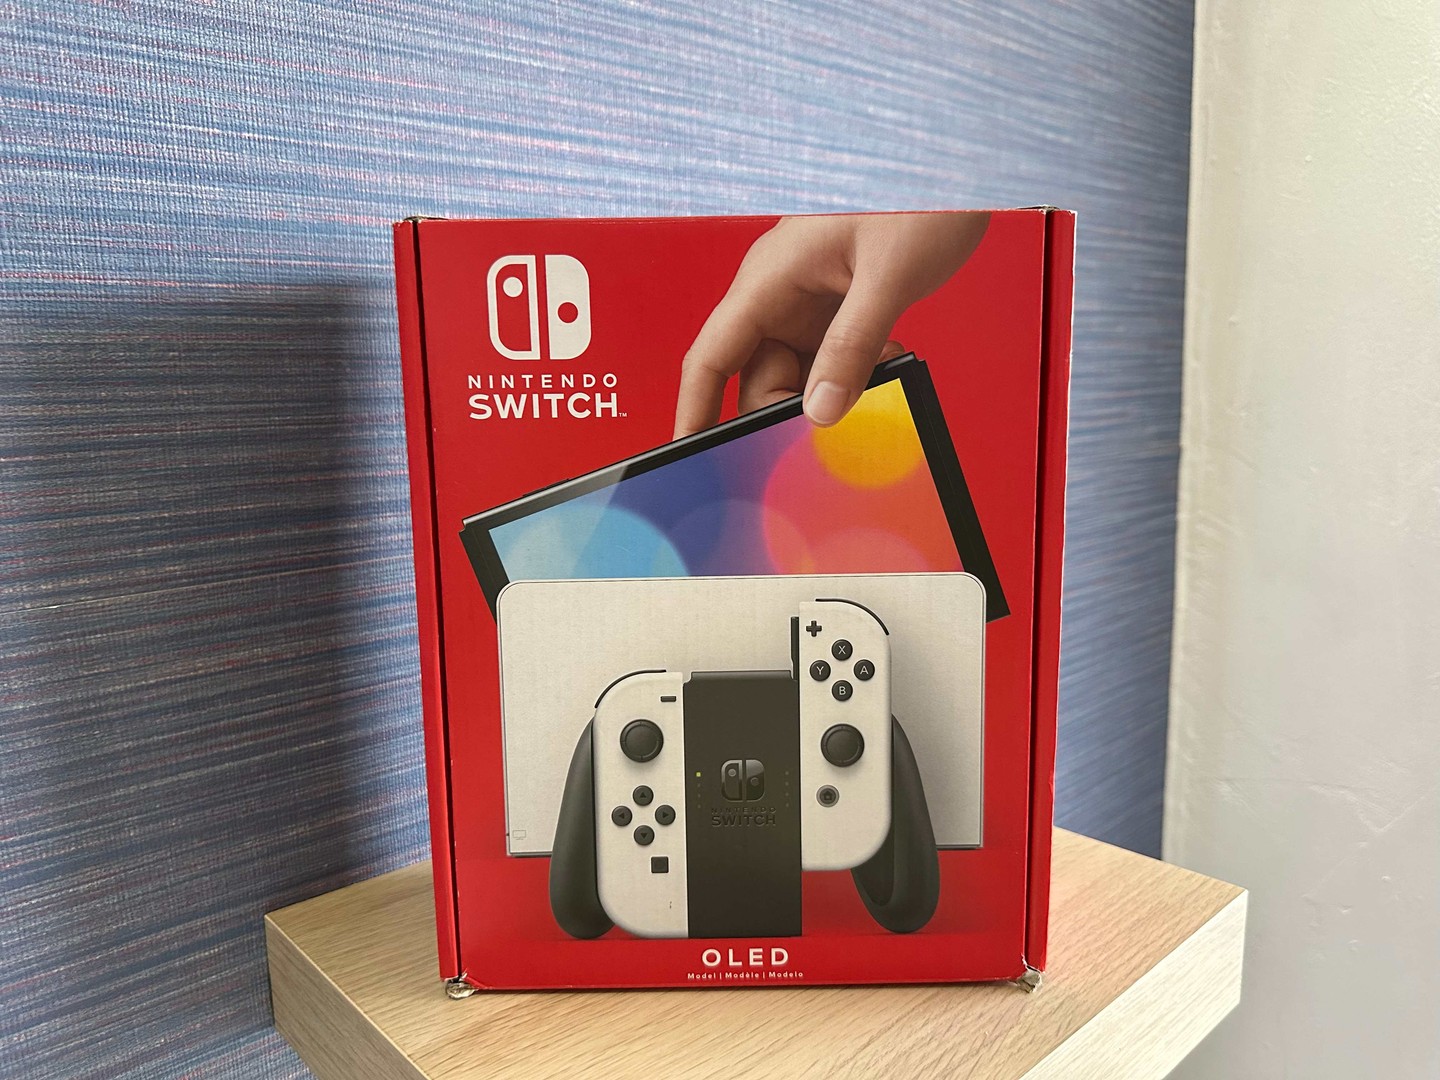 consolas y videojuegos - Vendo Nintendo Switch Oled Blanco Nuevos Sellados, Garantía, RD$ 19,300 NEG